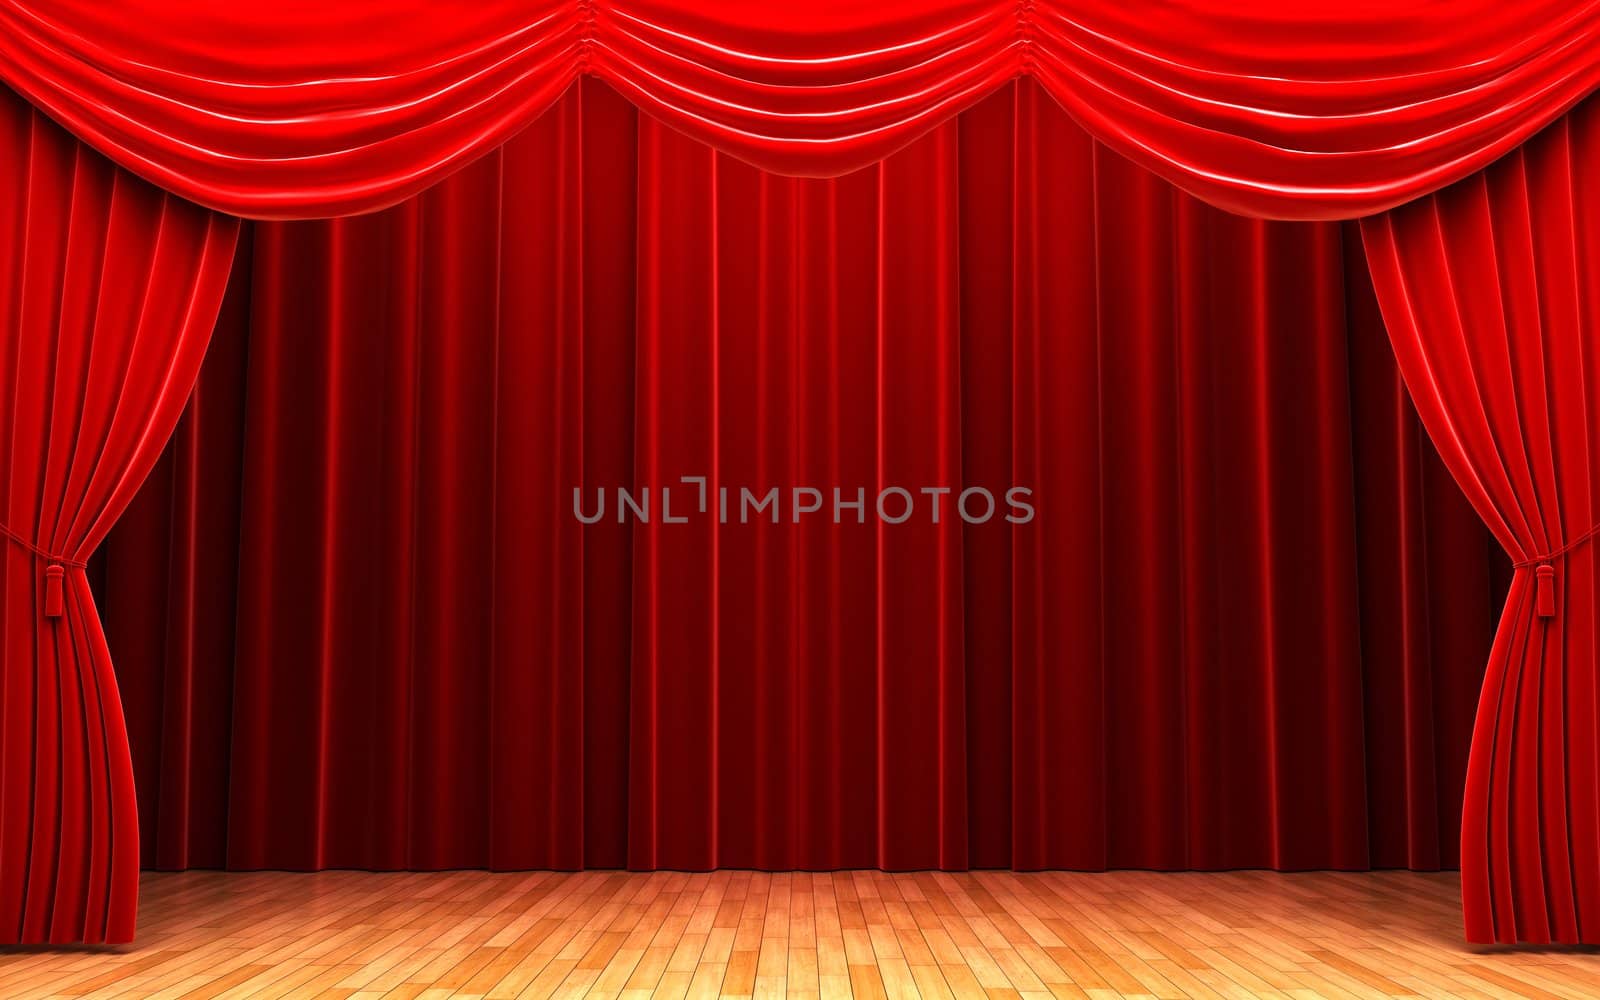 Red velvet curtain opening scene